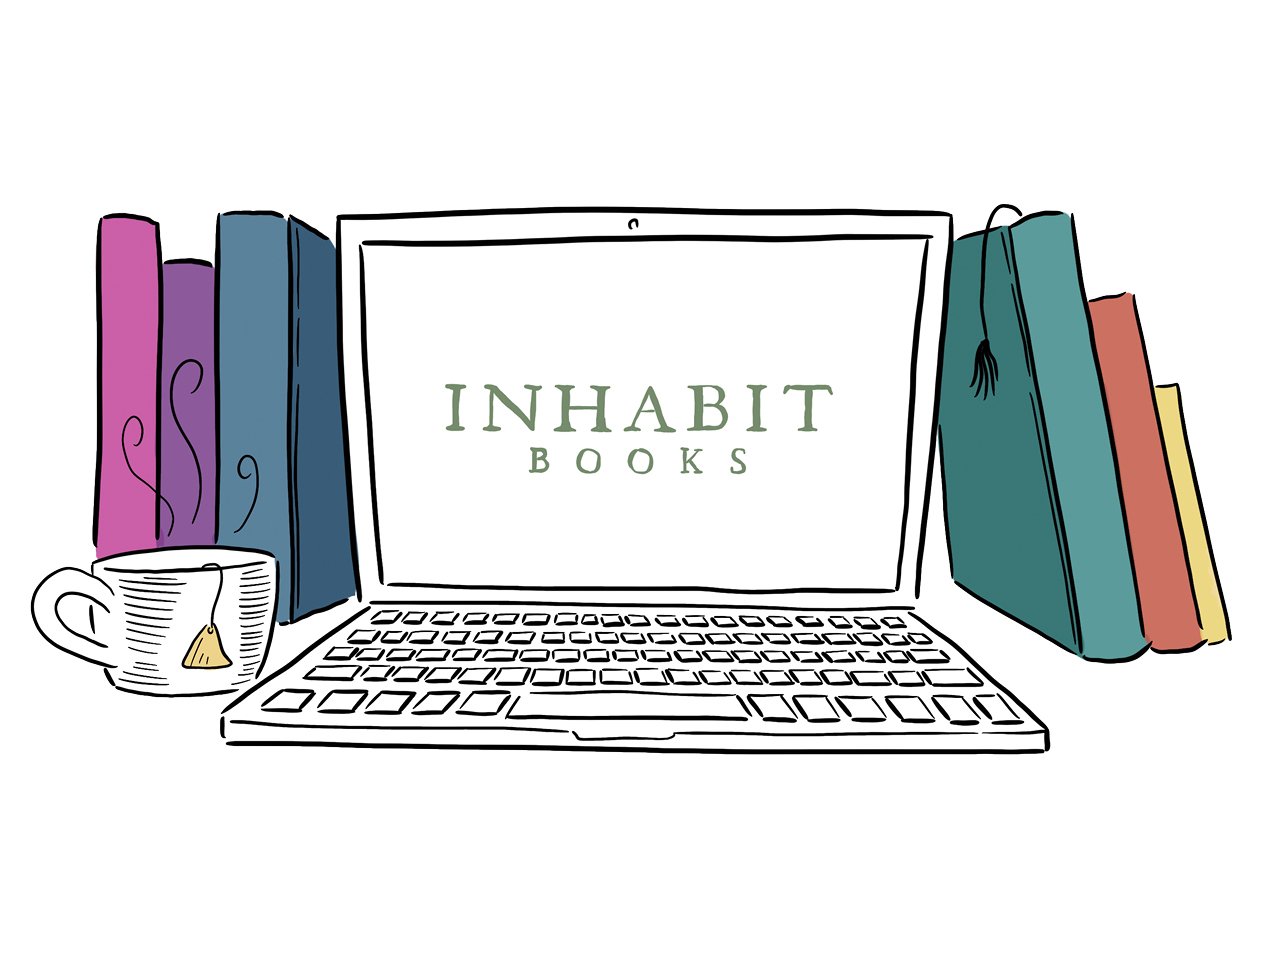 Inhabit Books